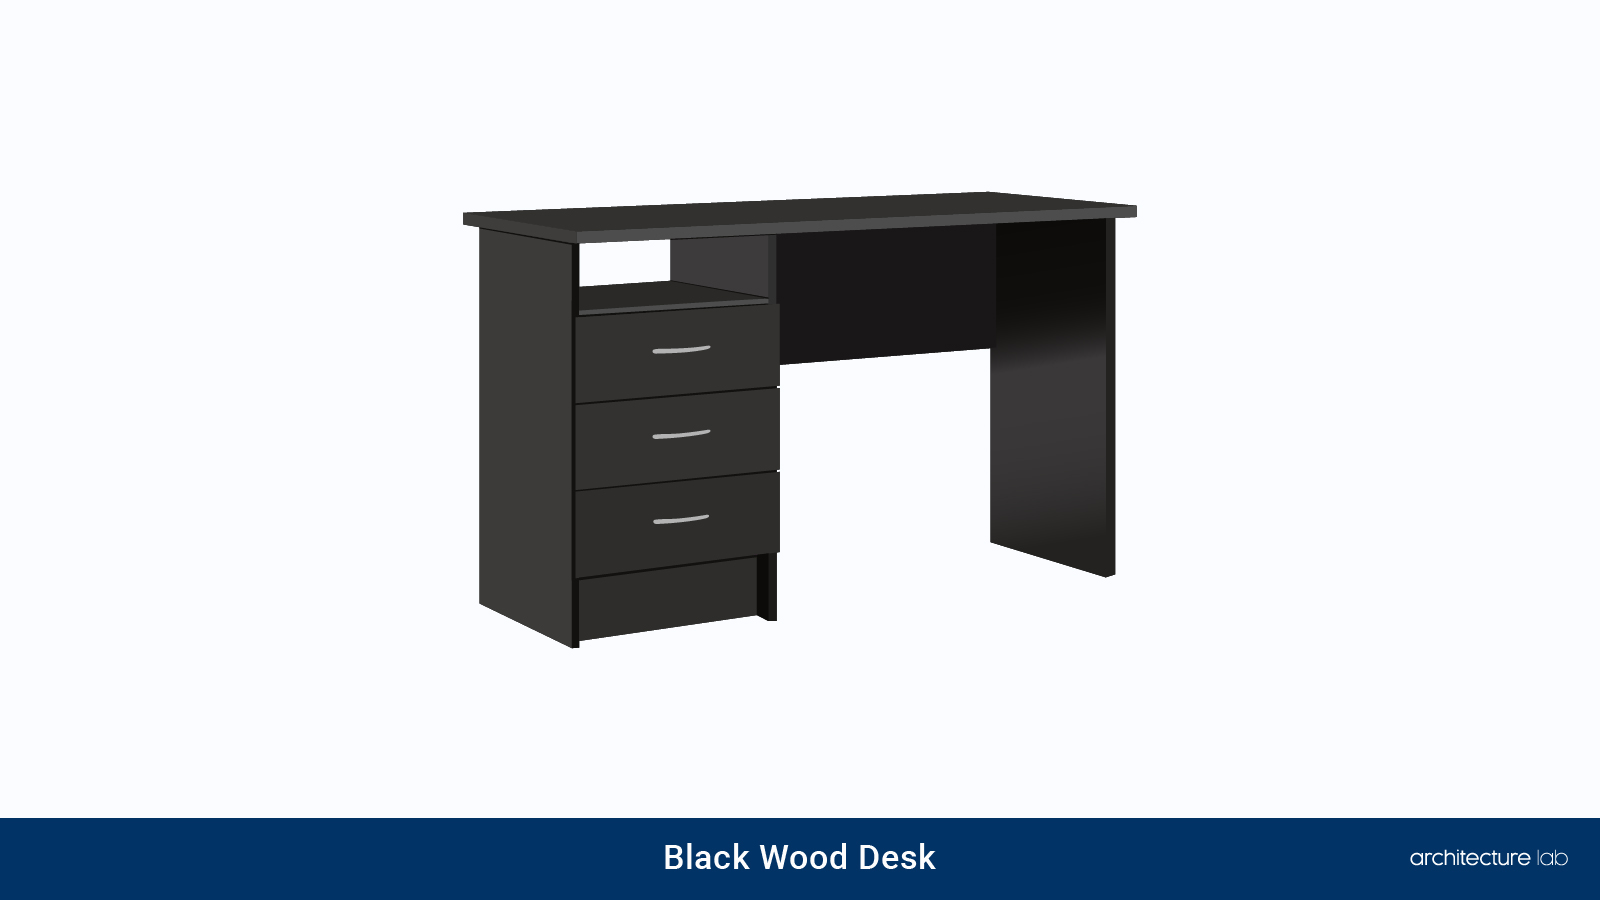 30. Black wood desk